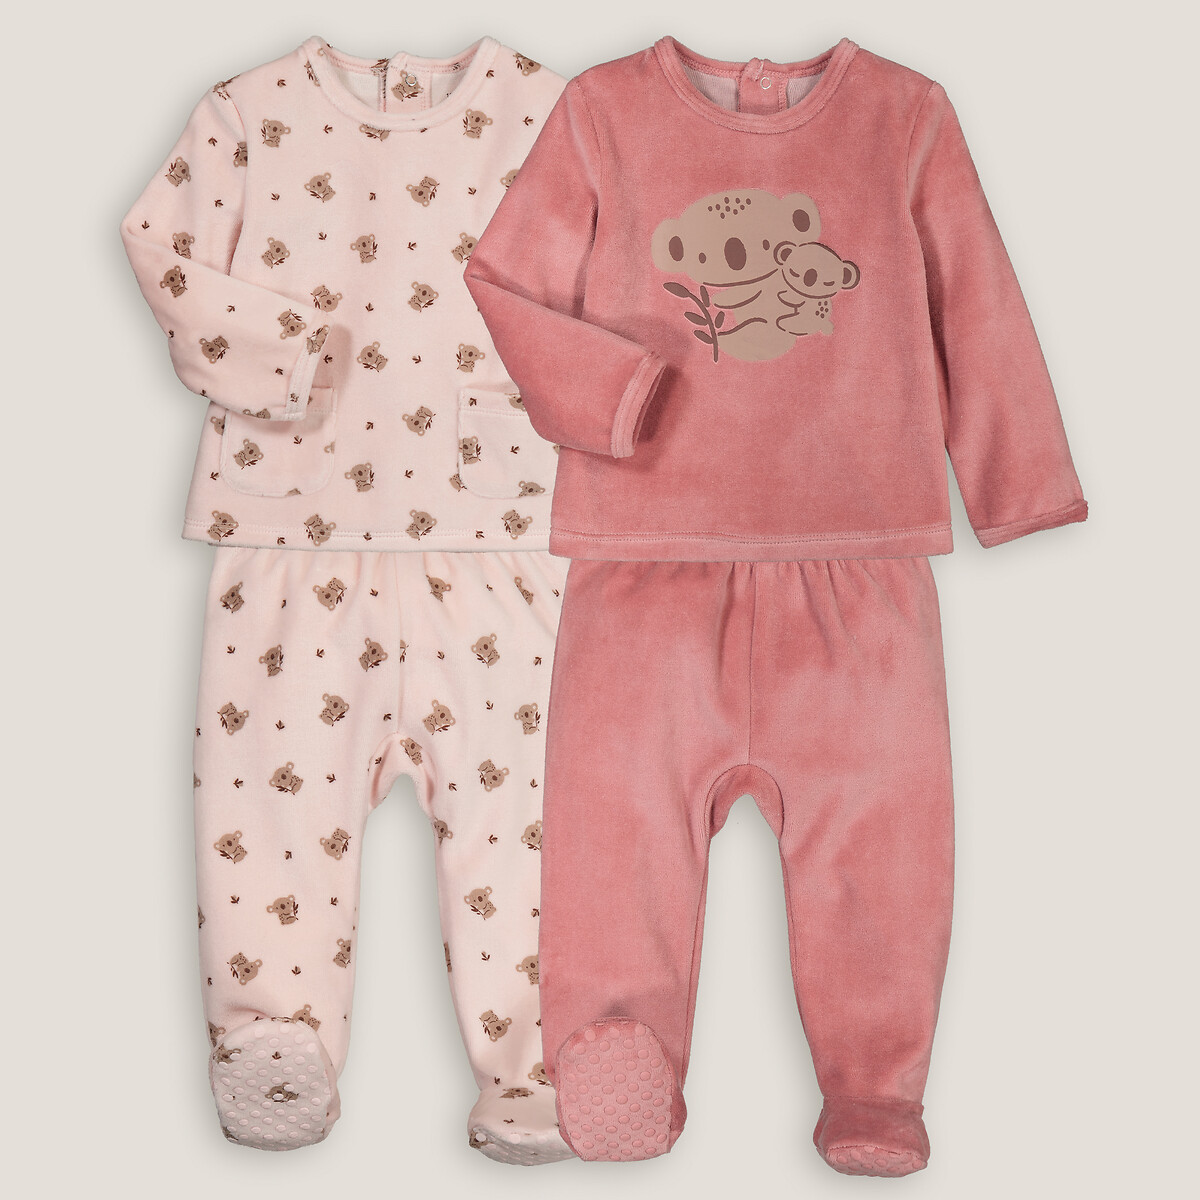 Комплект из двух пижам раздельных из велюра принт коалы 4 года - 102 см розовый комплект из двух пижам раздельных с принтом улитки 3 года 94 см белый